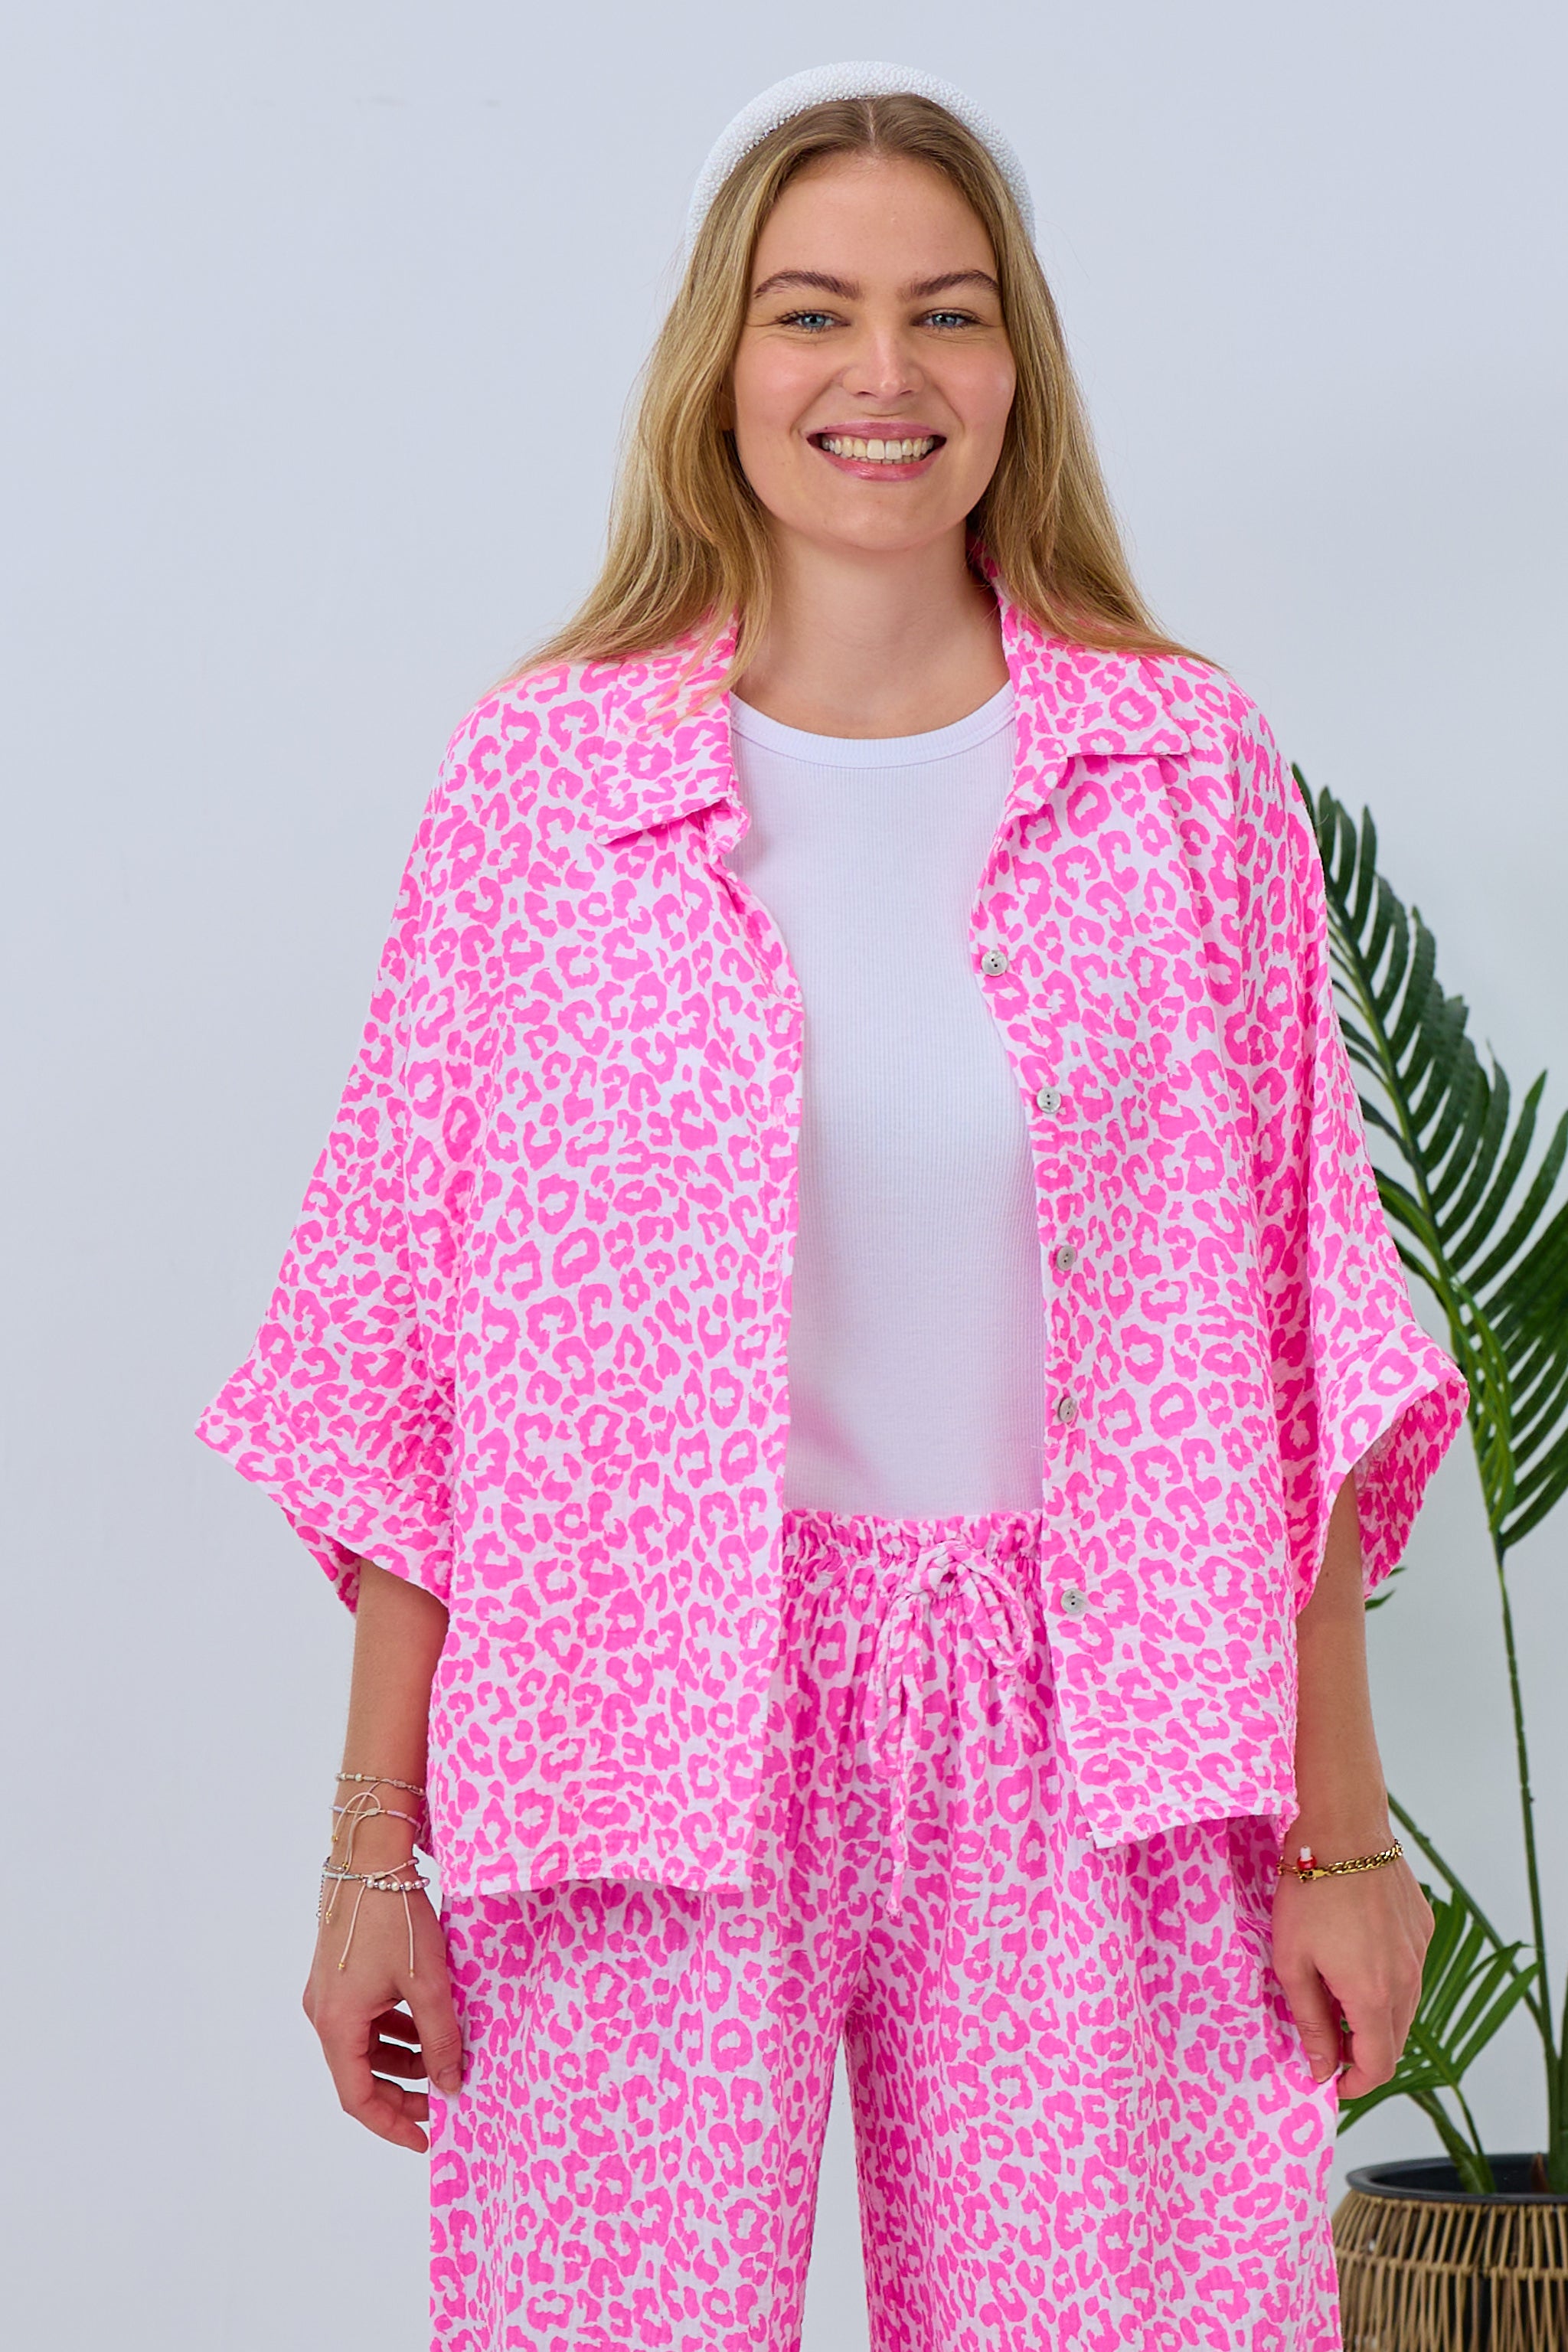 Damen Musselin Bluse pink-weiß leo Trends & Lifestyle